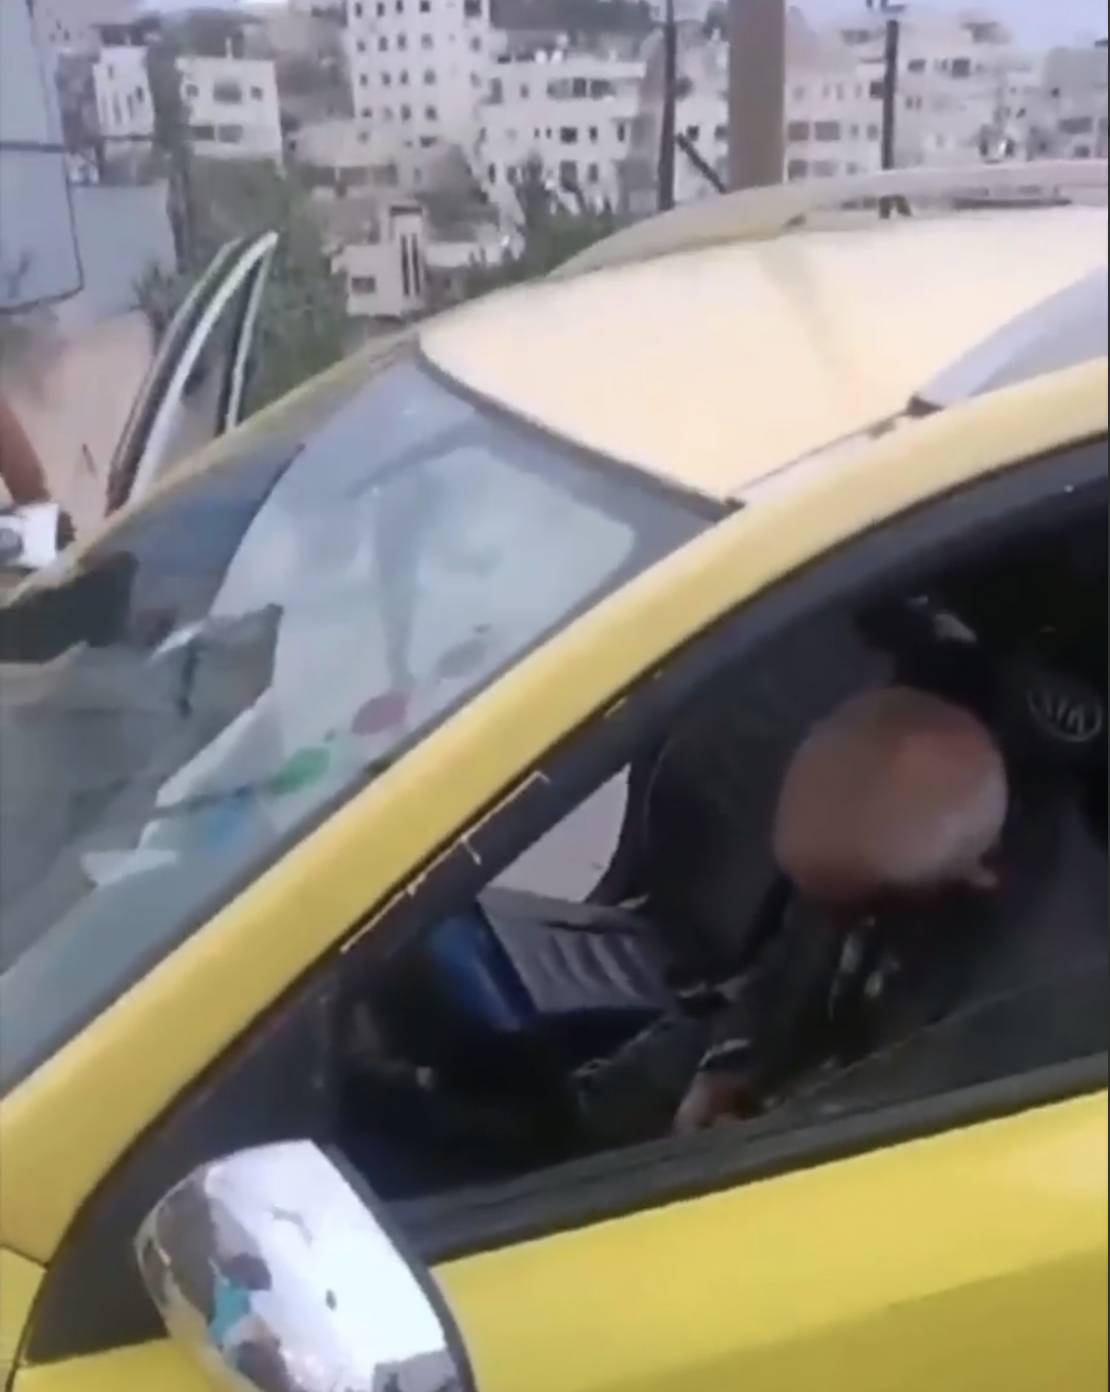 فيديو| الاحتلال يعدم "سائق تكسي" بالخليل ويعتدي بالضرب على آخر أمام أطفاله على البث المباشر 